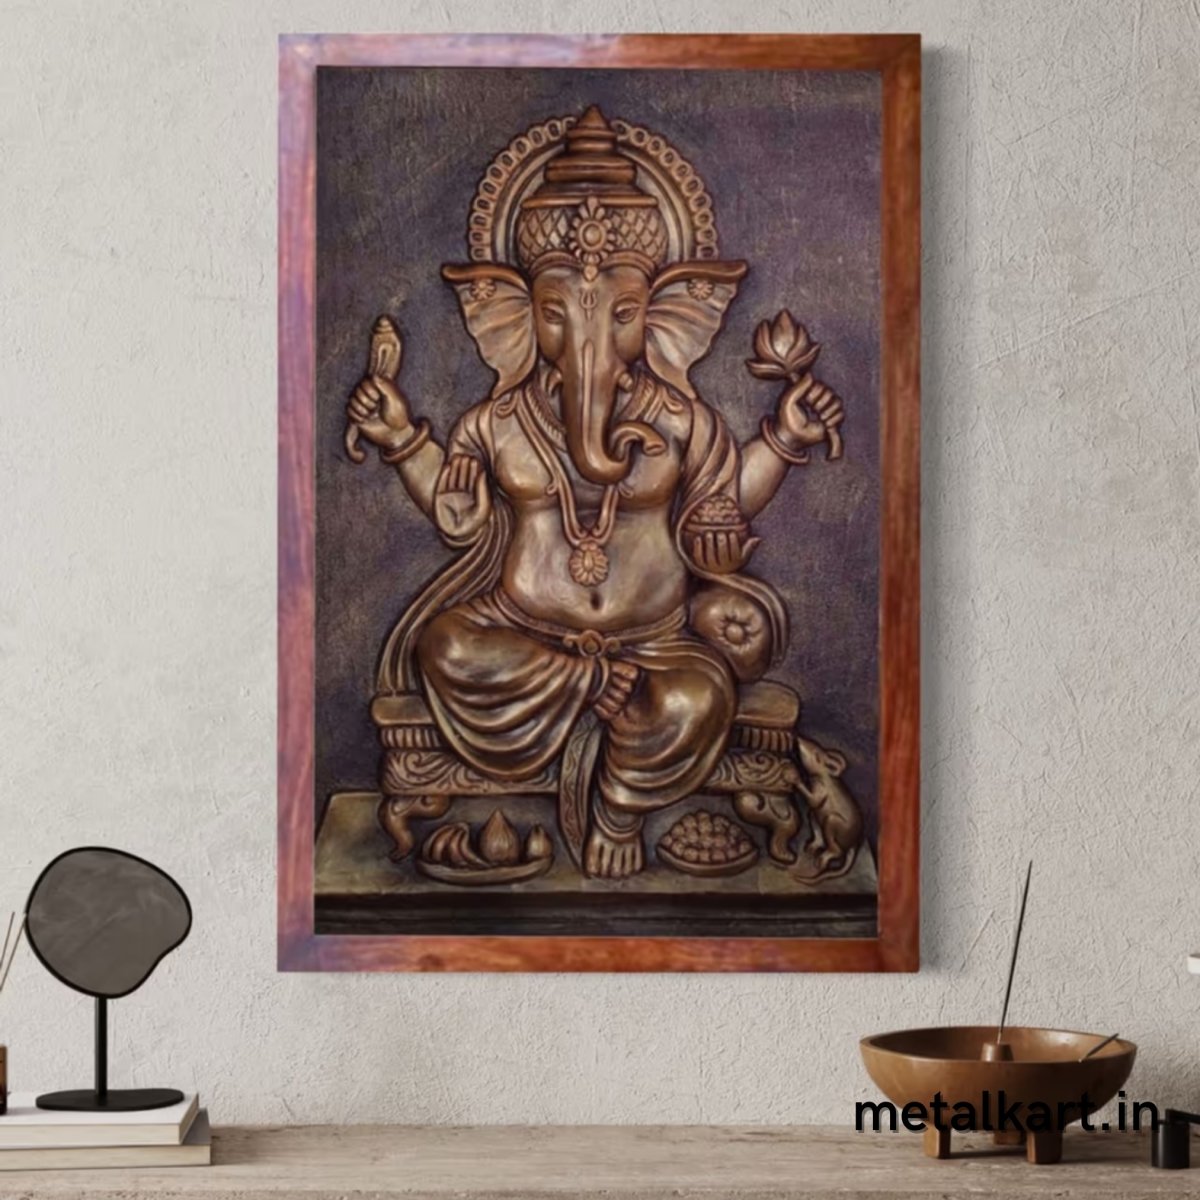 Sri Ganesh 3D Wall Sculpture (36 x 24 Inches)